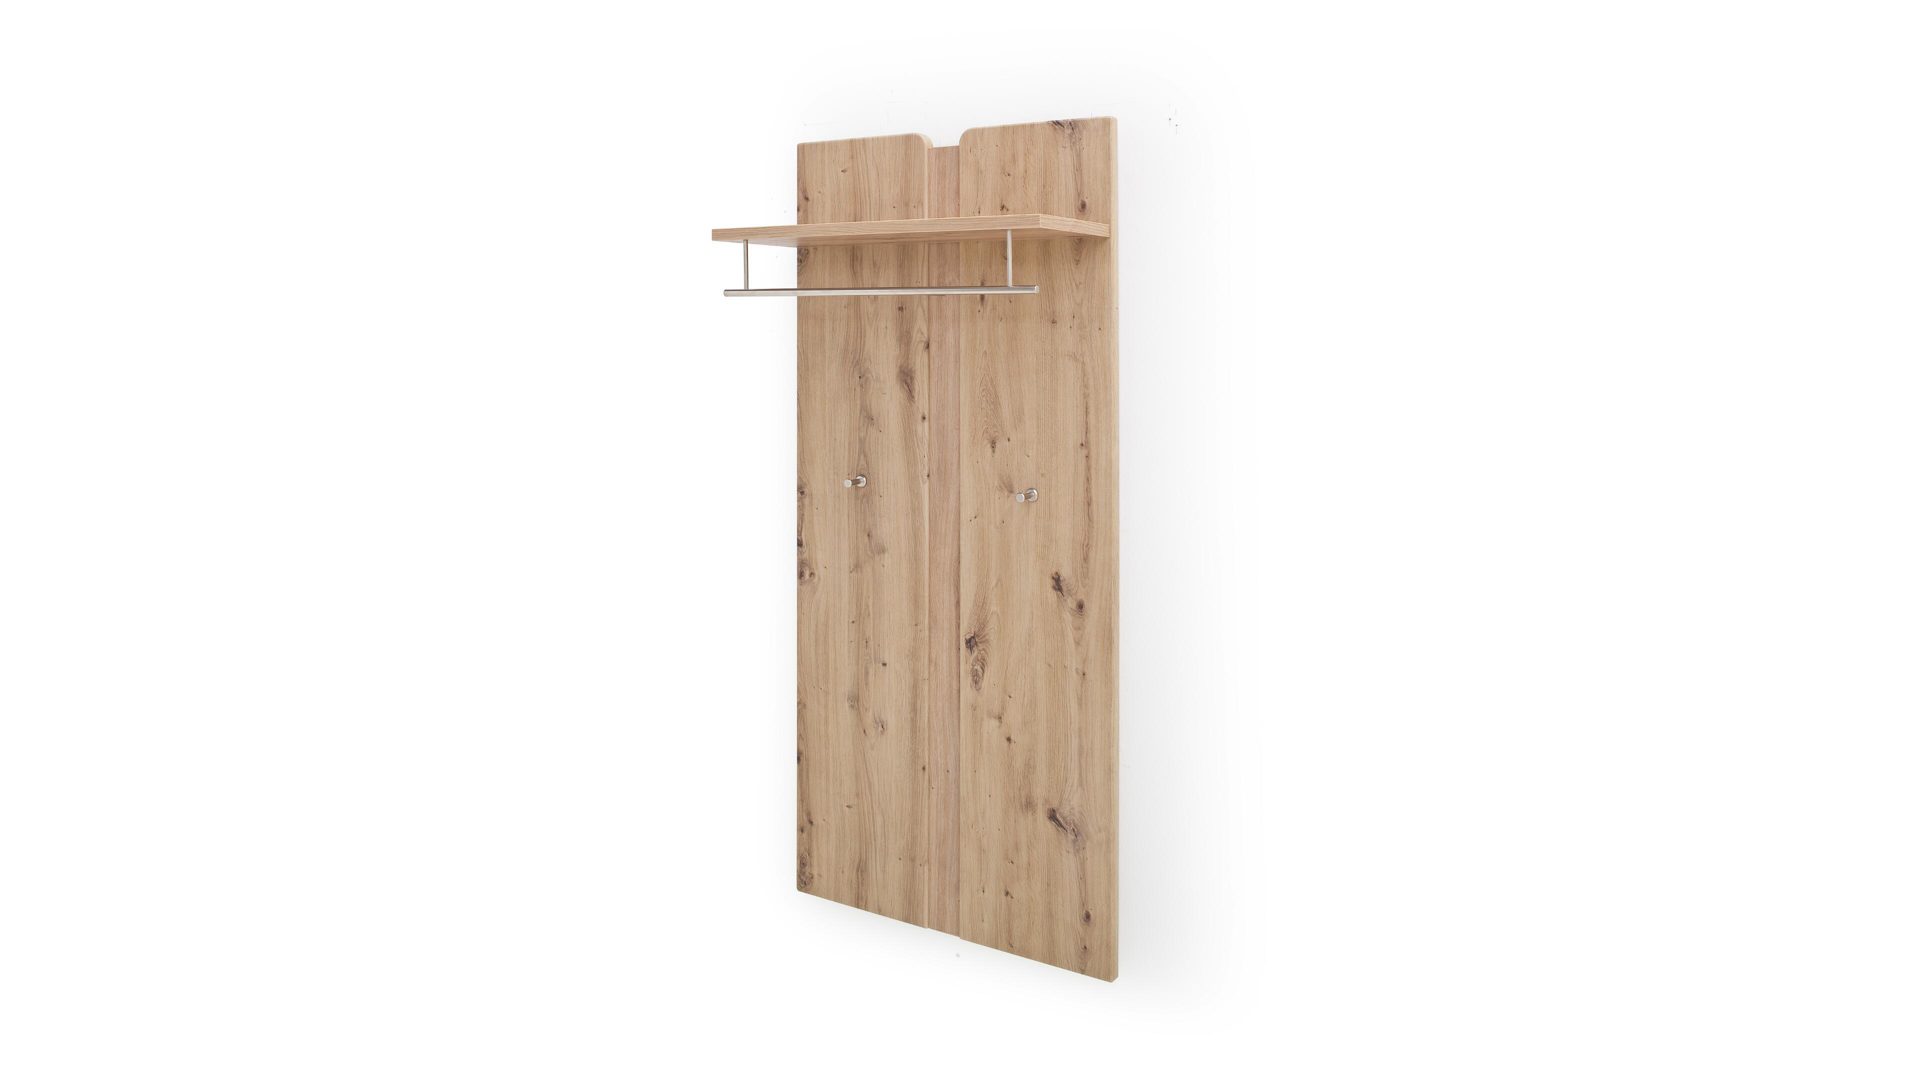 Wandgarderobe Mca furniture aus Holz in Holzfarben Wandgarderobe balkeneichefarbene Kunststoffoberflächen – ca. 70 x 156 cm